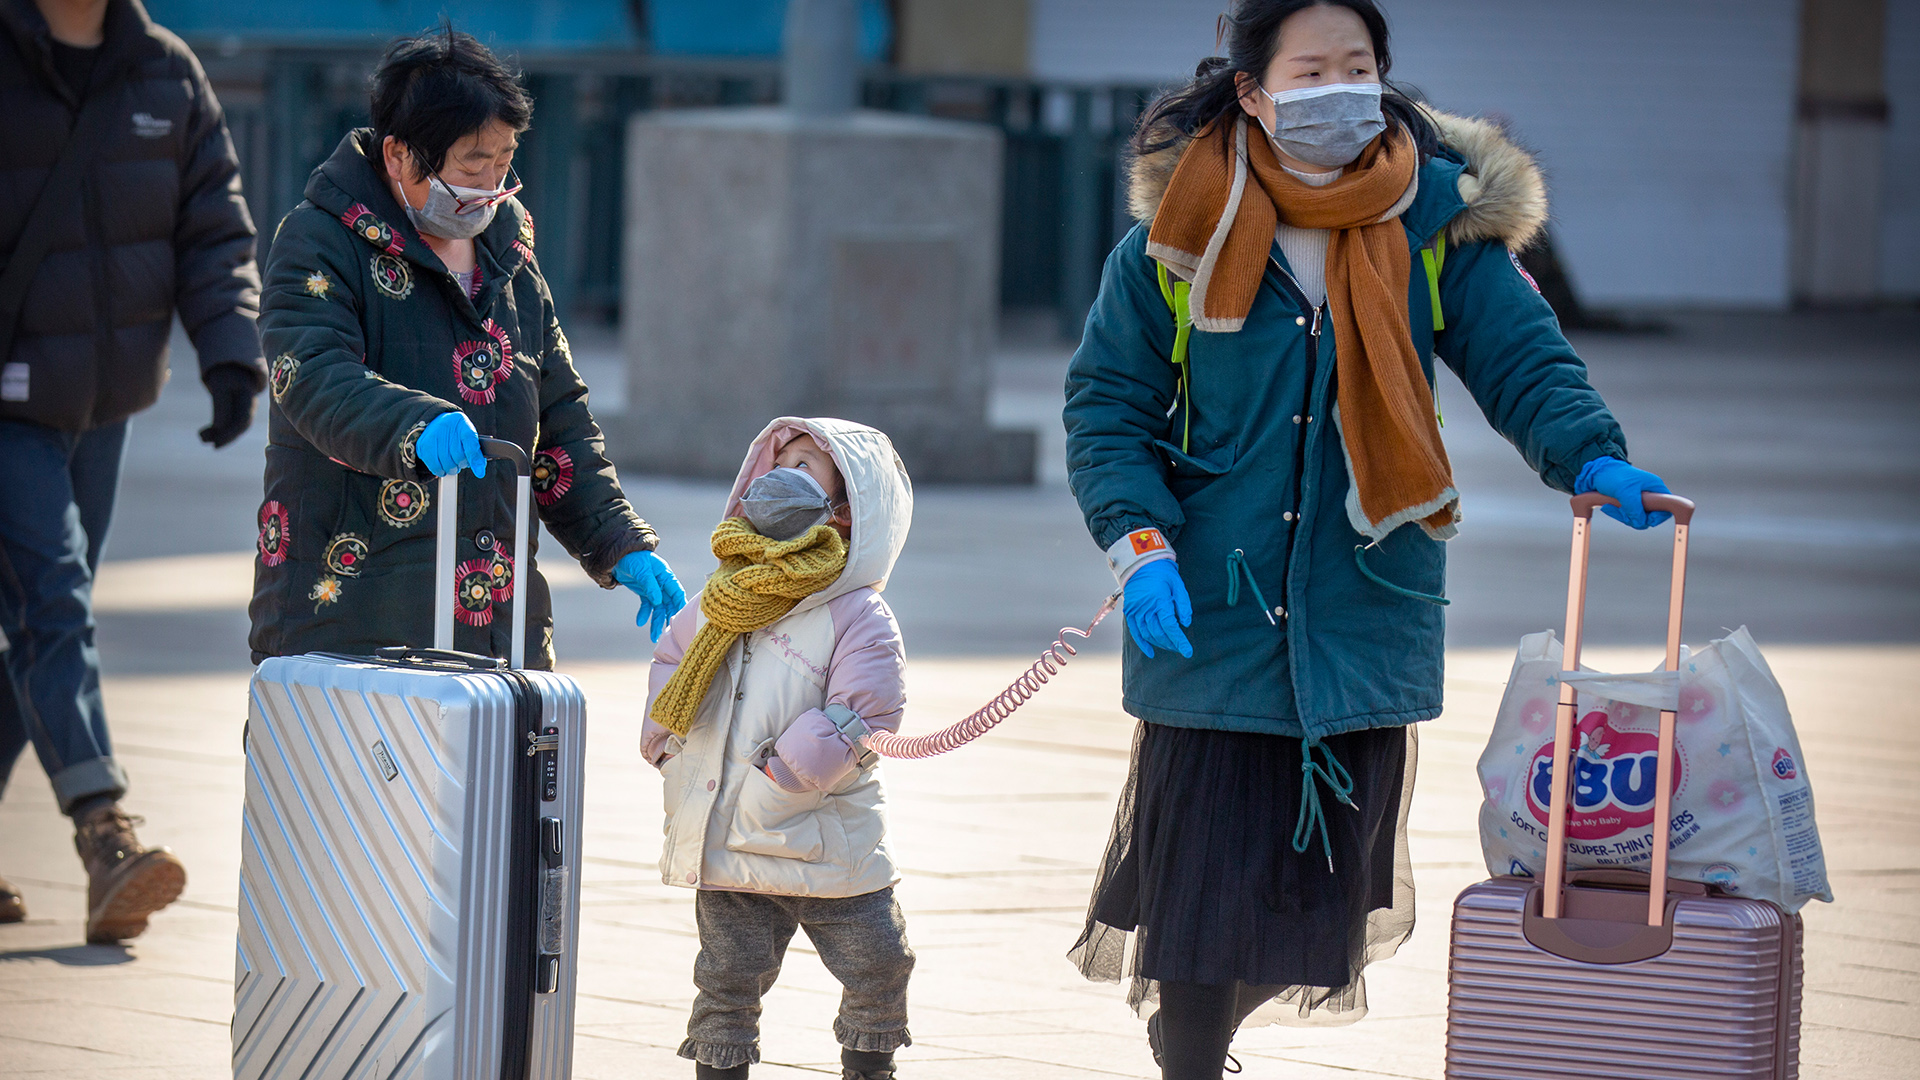 Reisende am Bahnhof in Peking mit Rollkoffern tragen Mundschutz, China | dpa